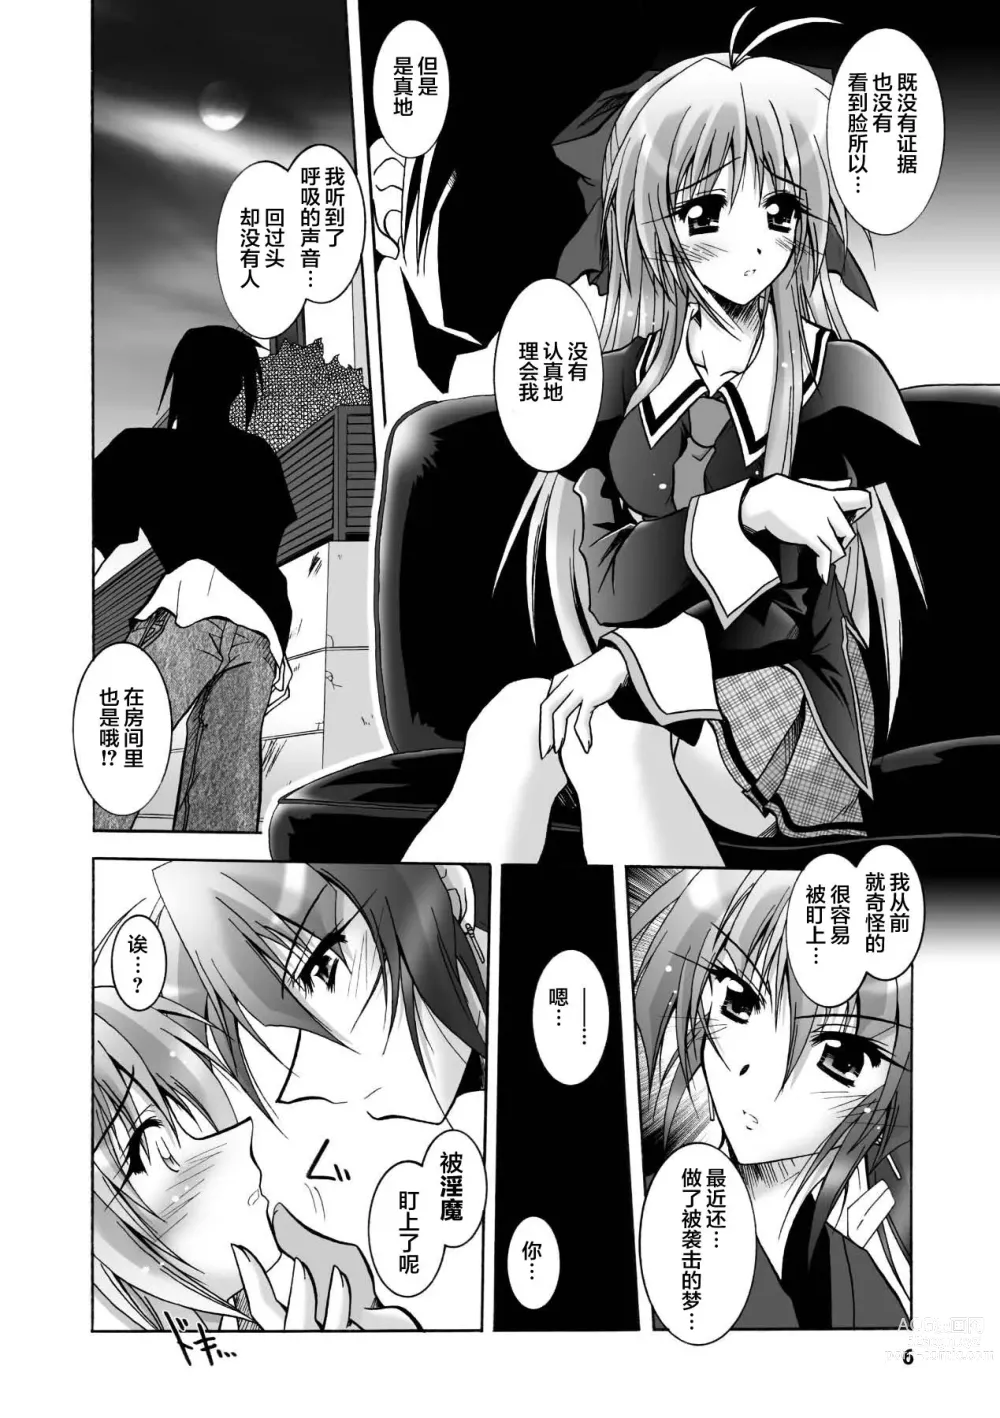 Page 6 of manga Matantei Toudou Shizuka no Inyou Jikenbo